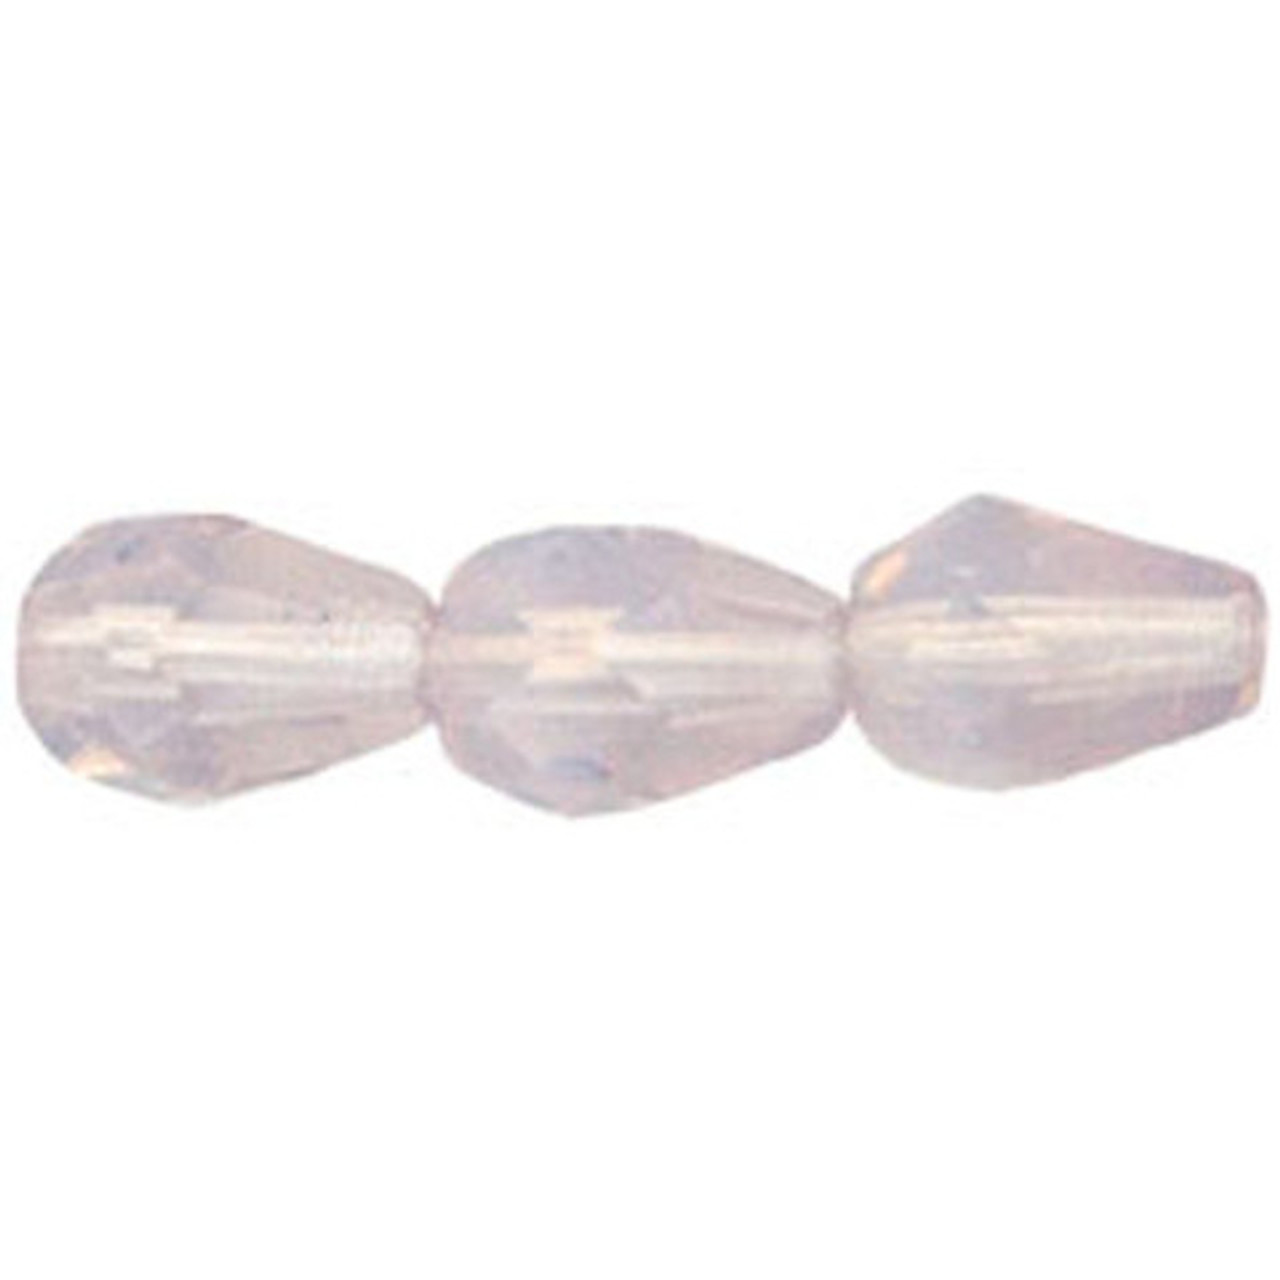 Faceted Vertical Teardrop Beads Czech Glass Firepolish MILKY AMETHYST 7x5mm  (25pcs)